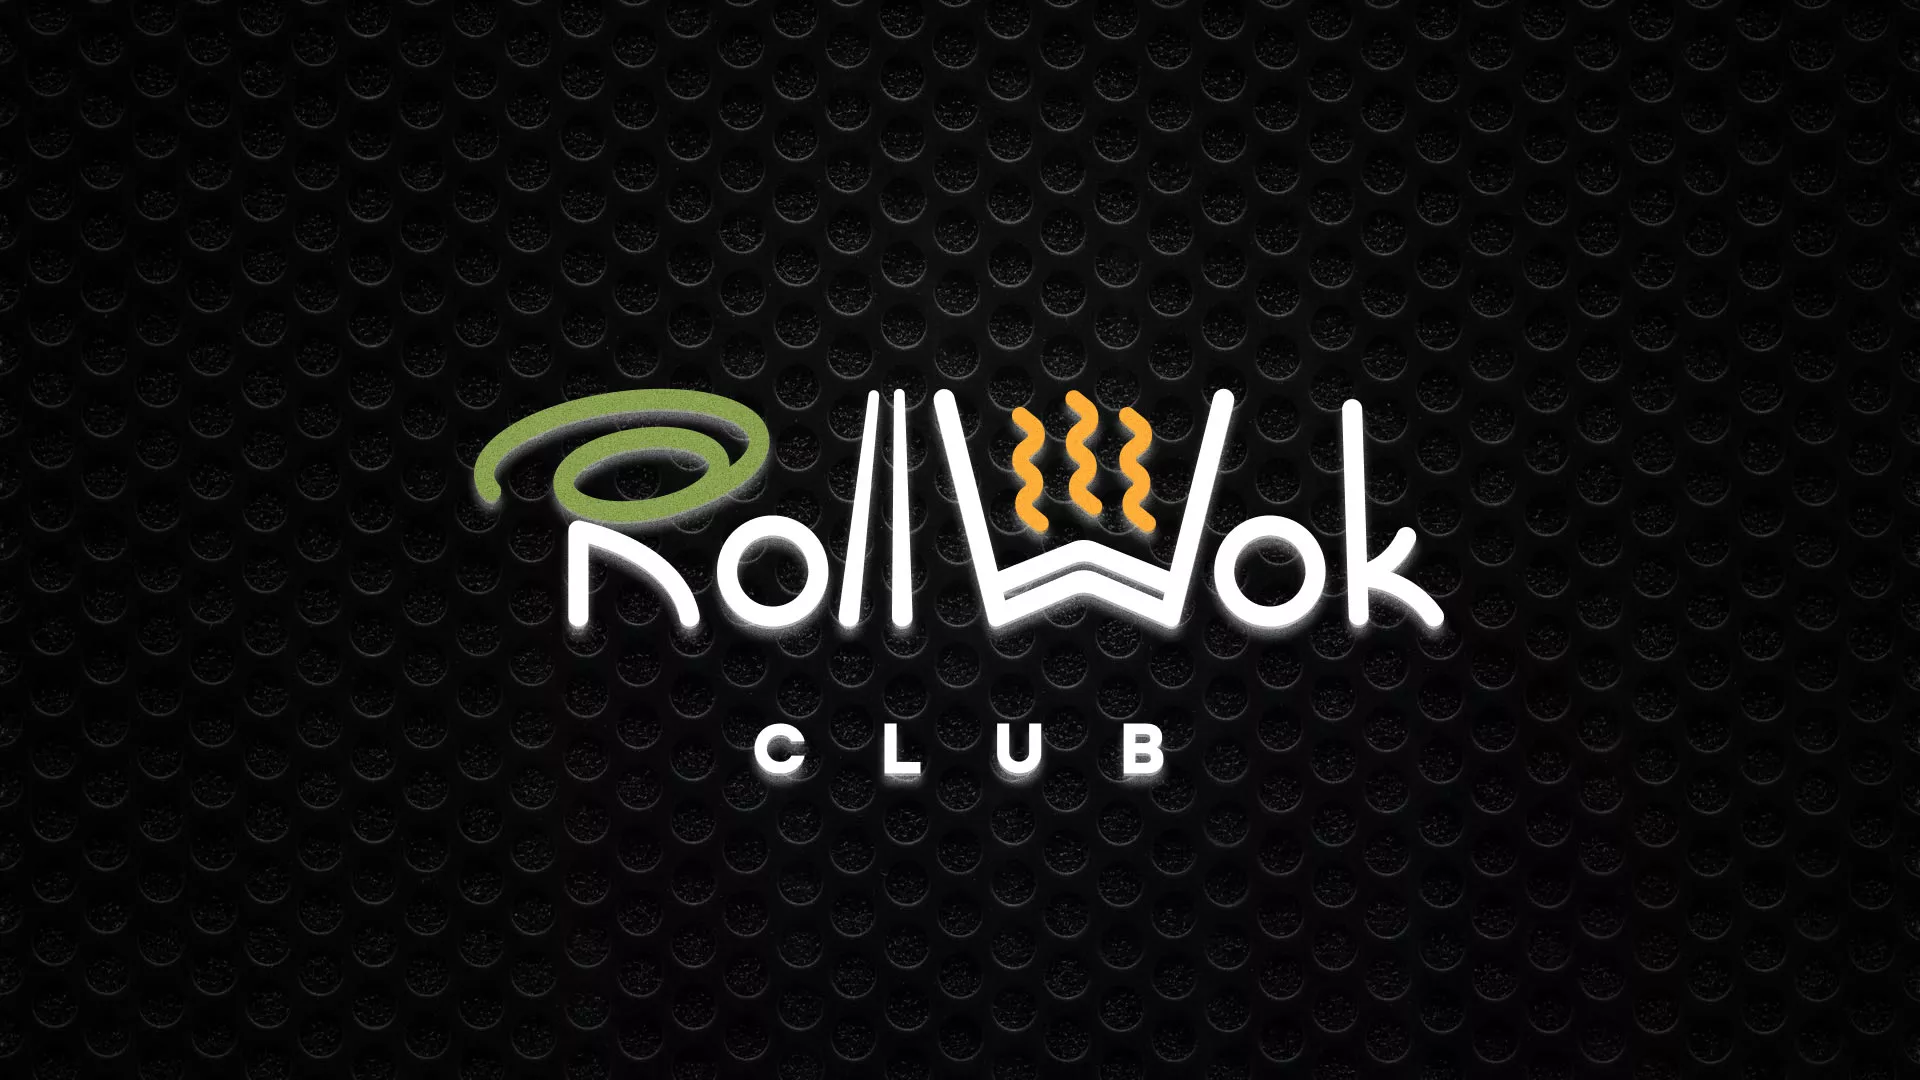 Брендирование торговых точек суши-бара «Roll Wok Club» в Любани